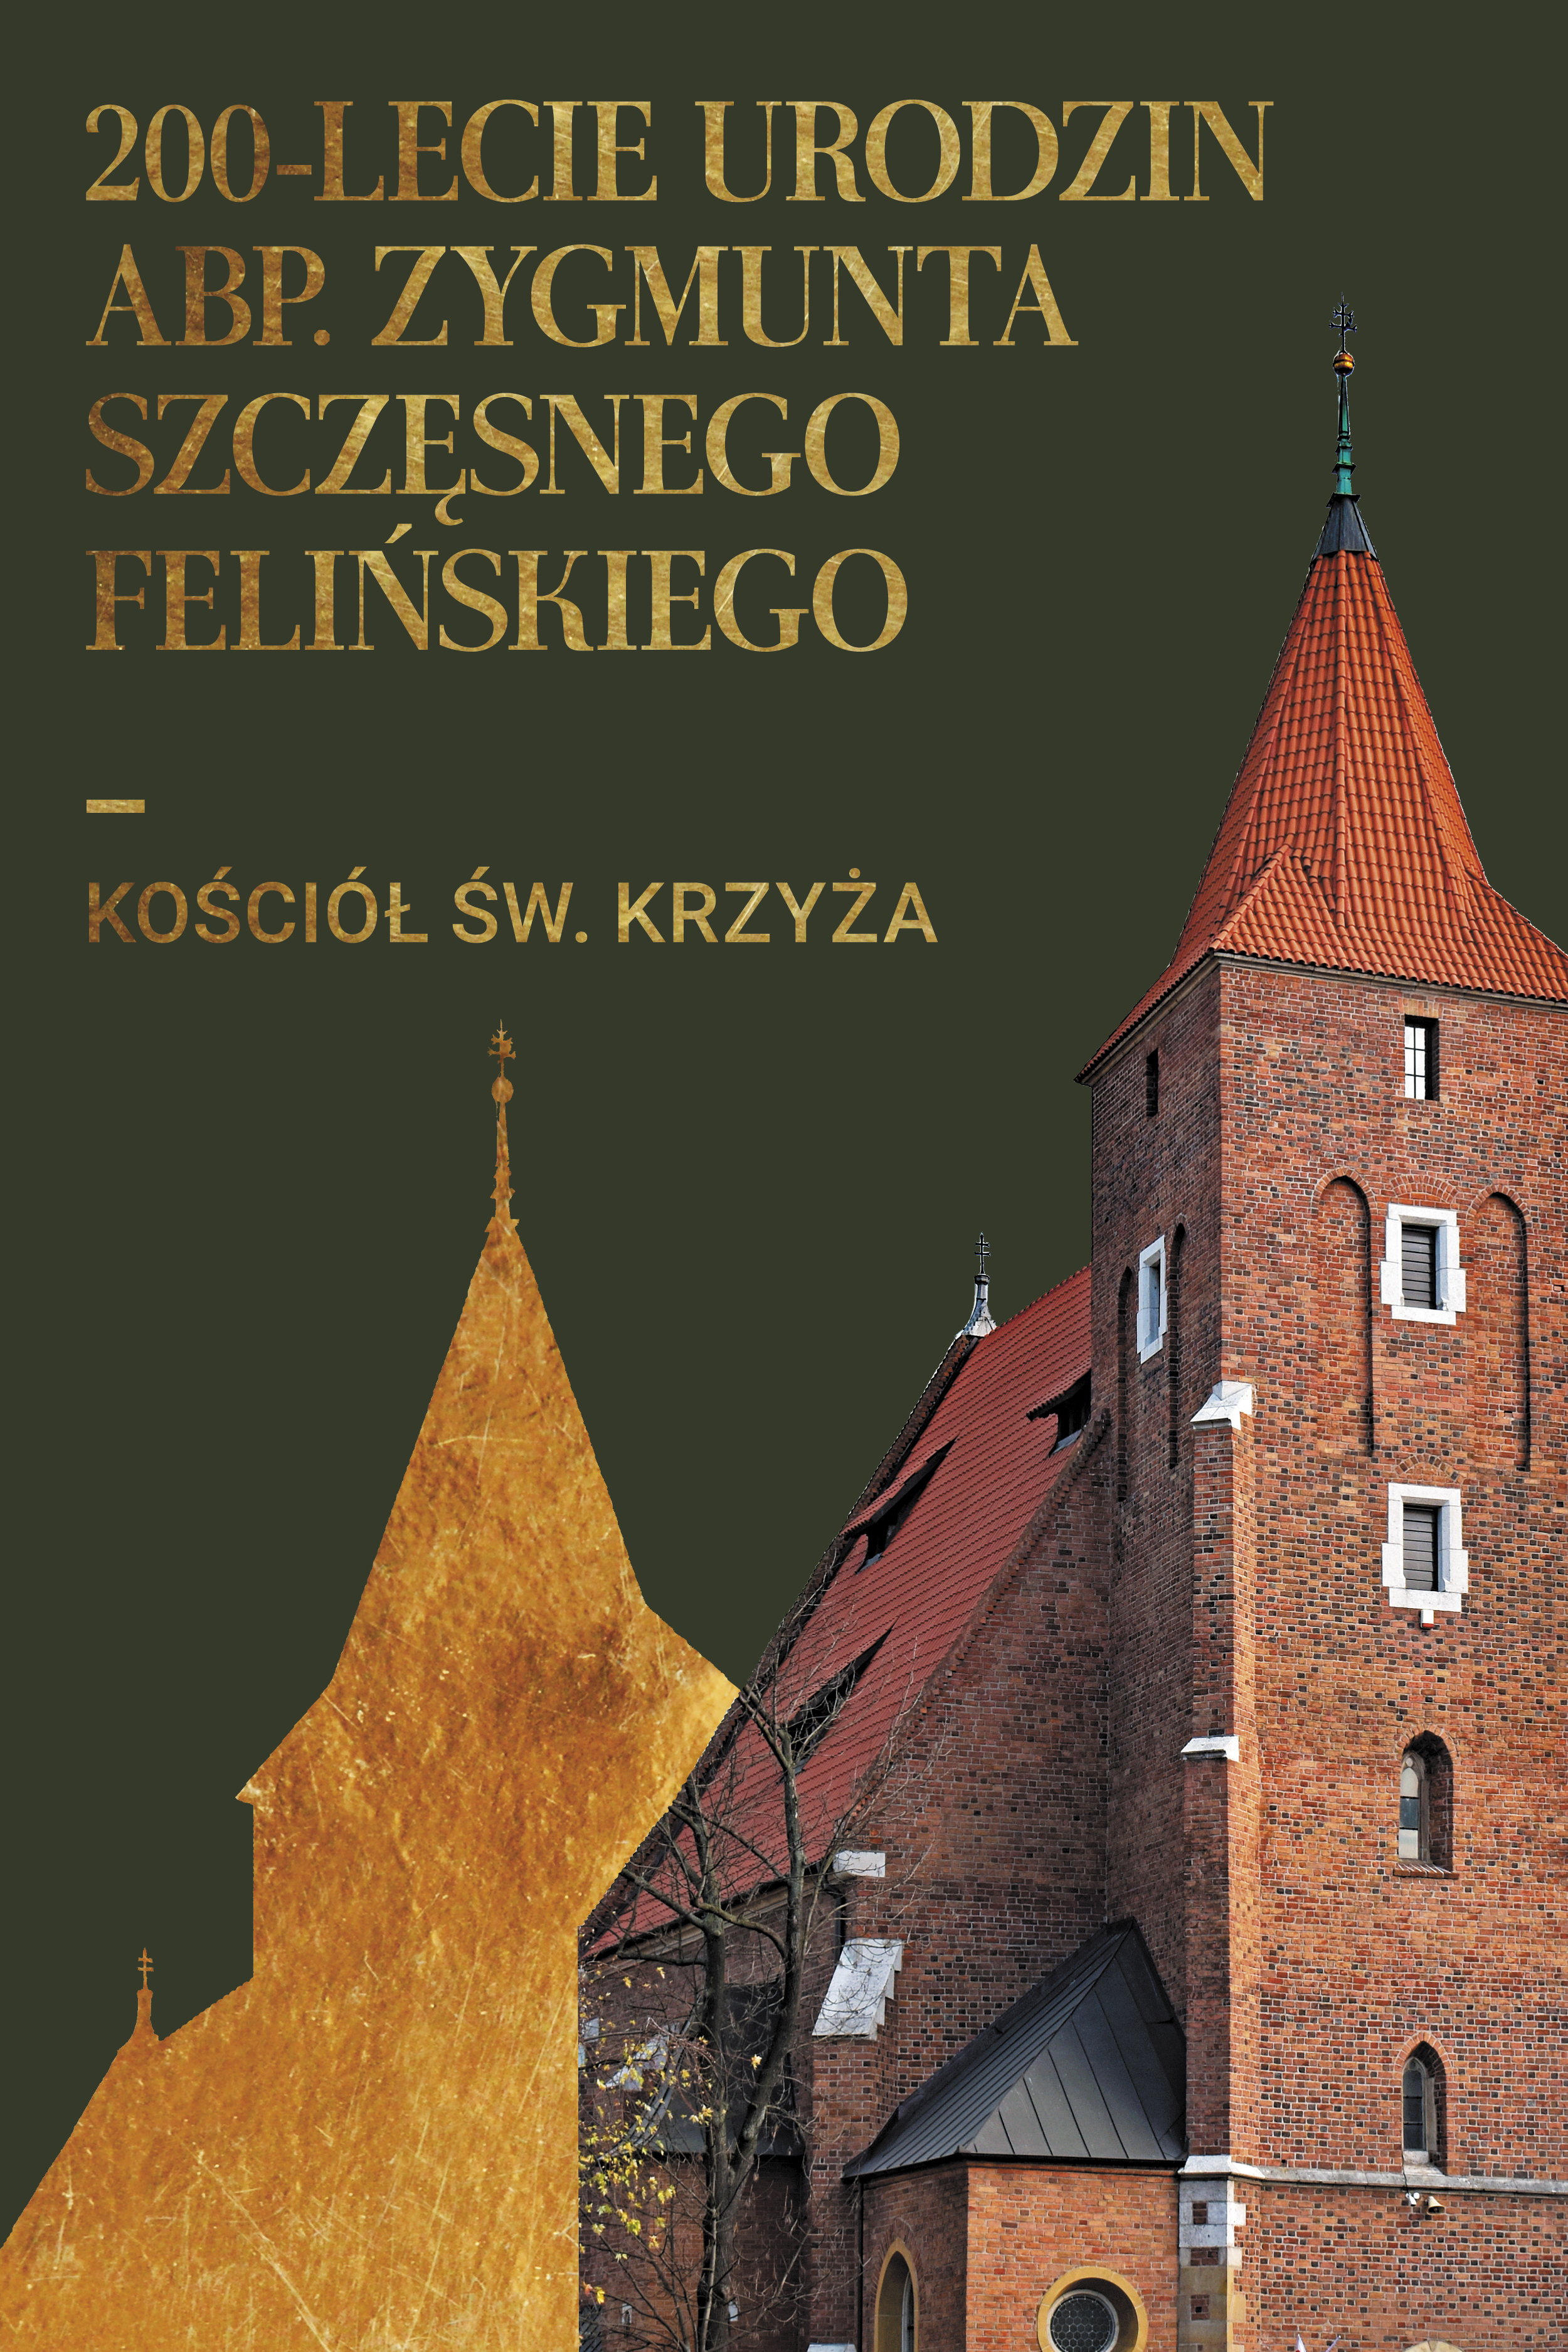 Msza św. w 200-lecie urodzin abp. Zygmunta Szczęsnego Felińskiego